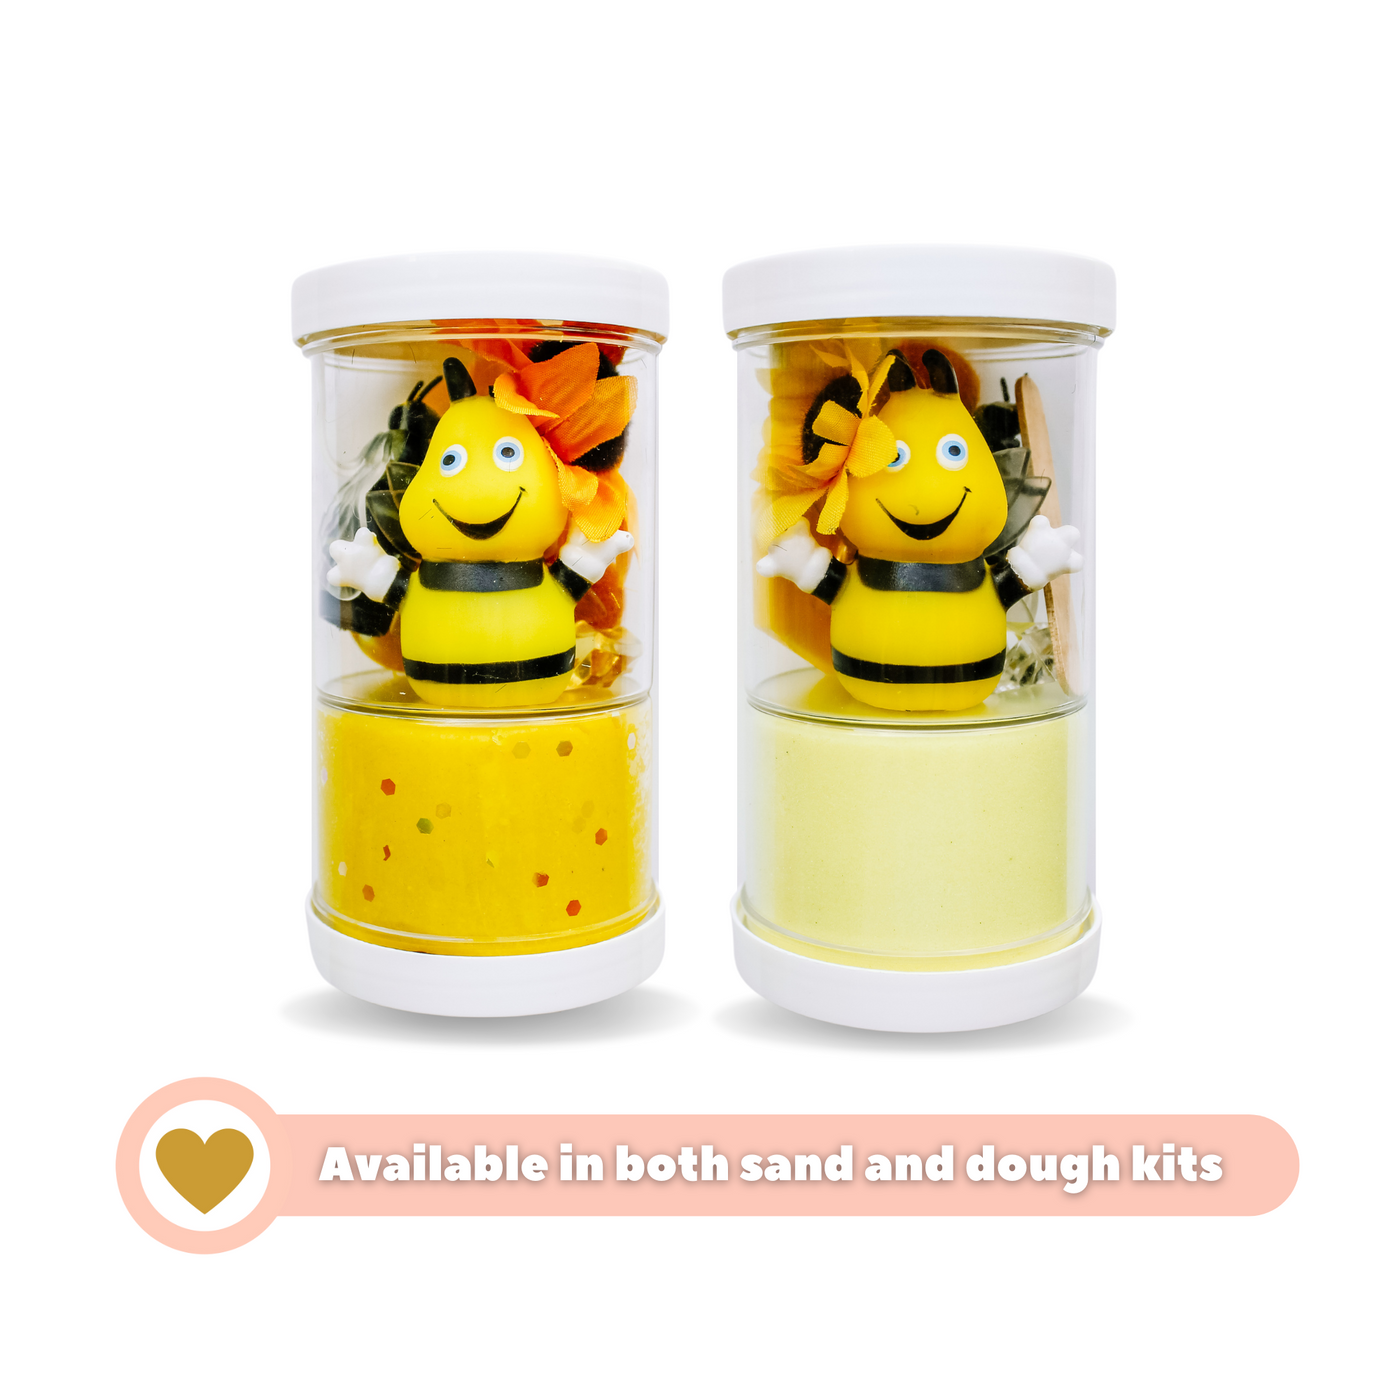 Bees Sensory Kit